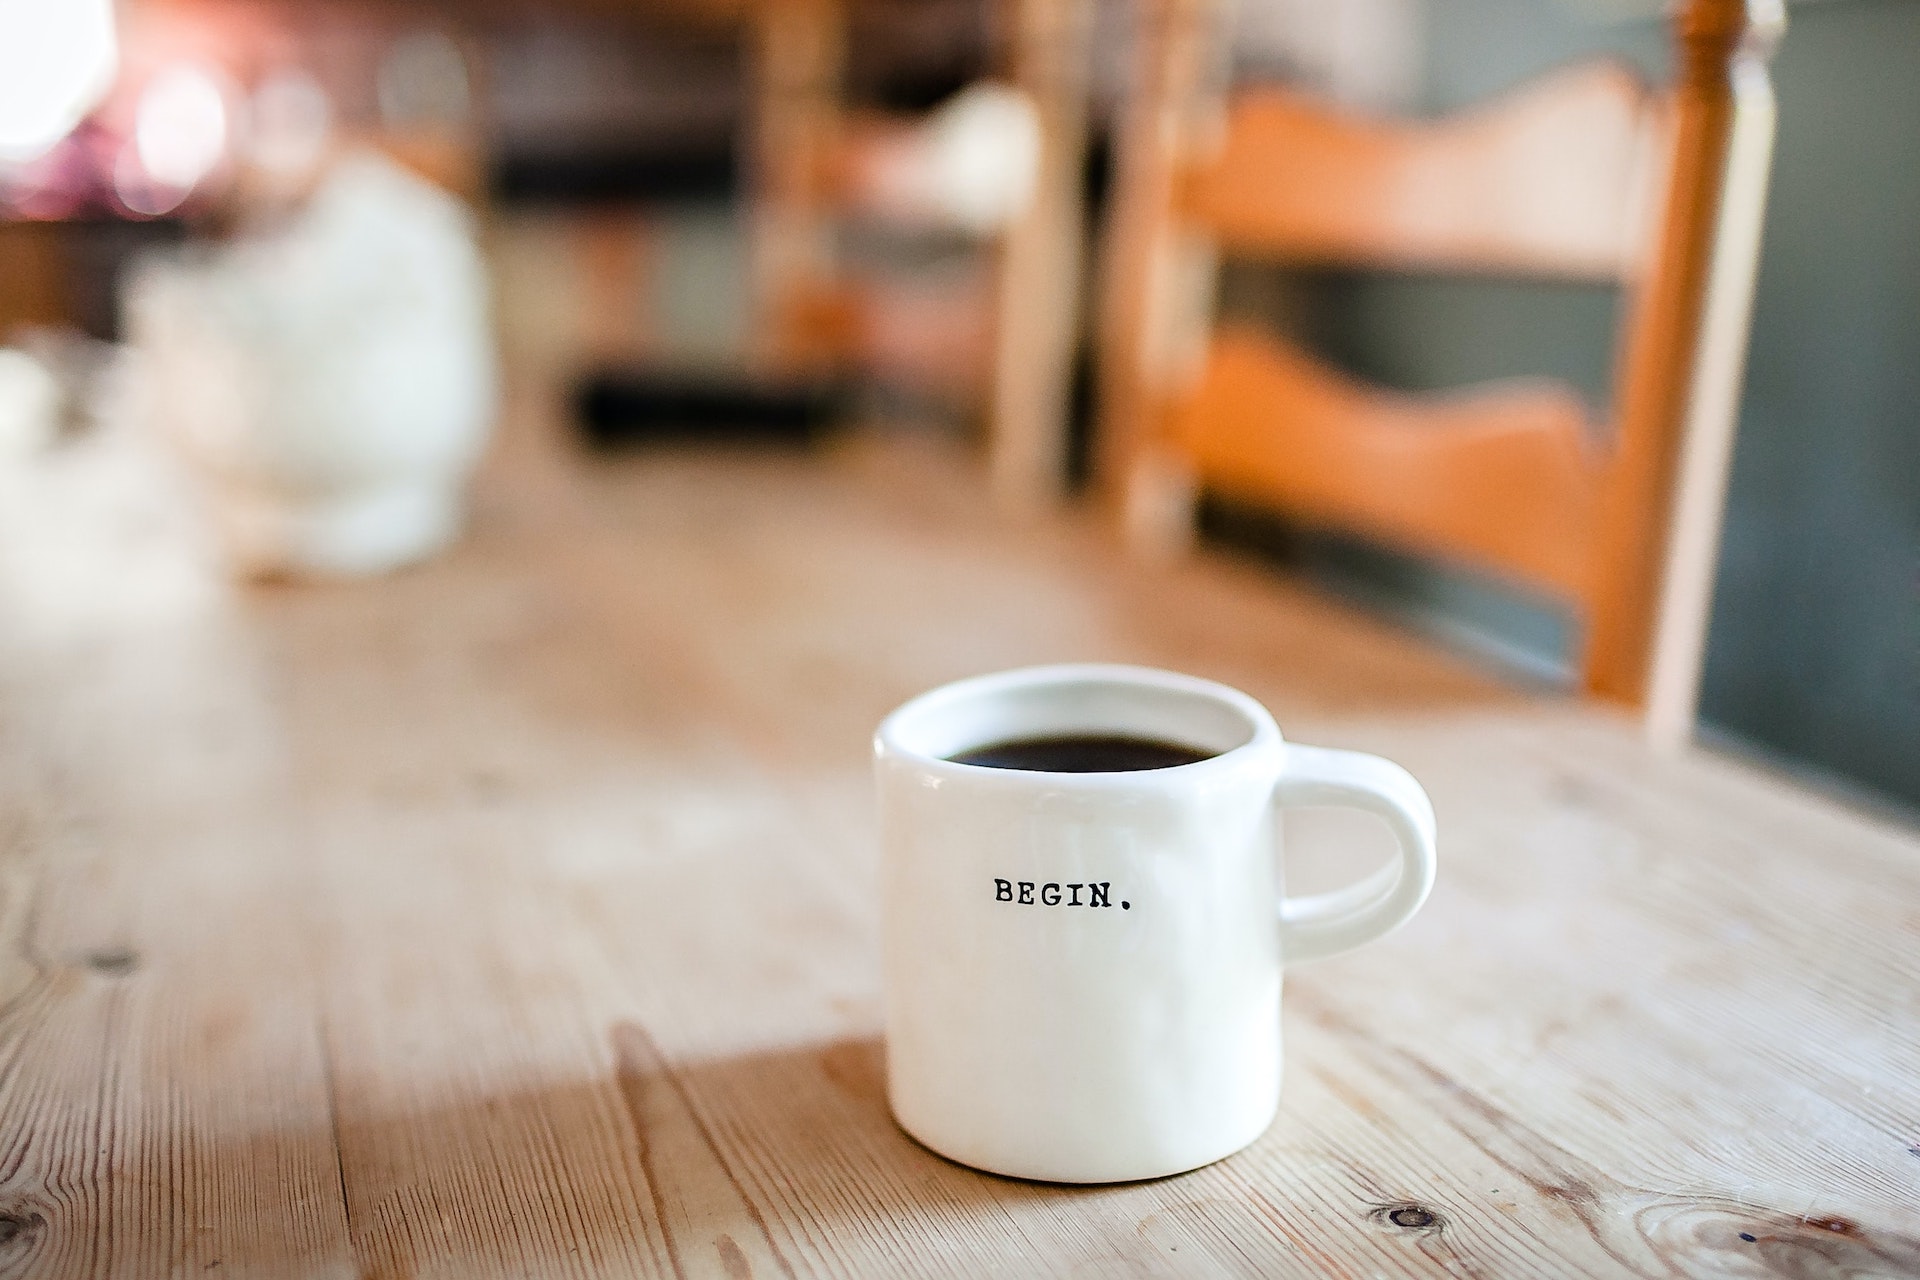 coffee mug on the table